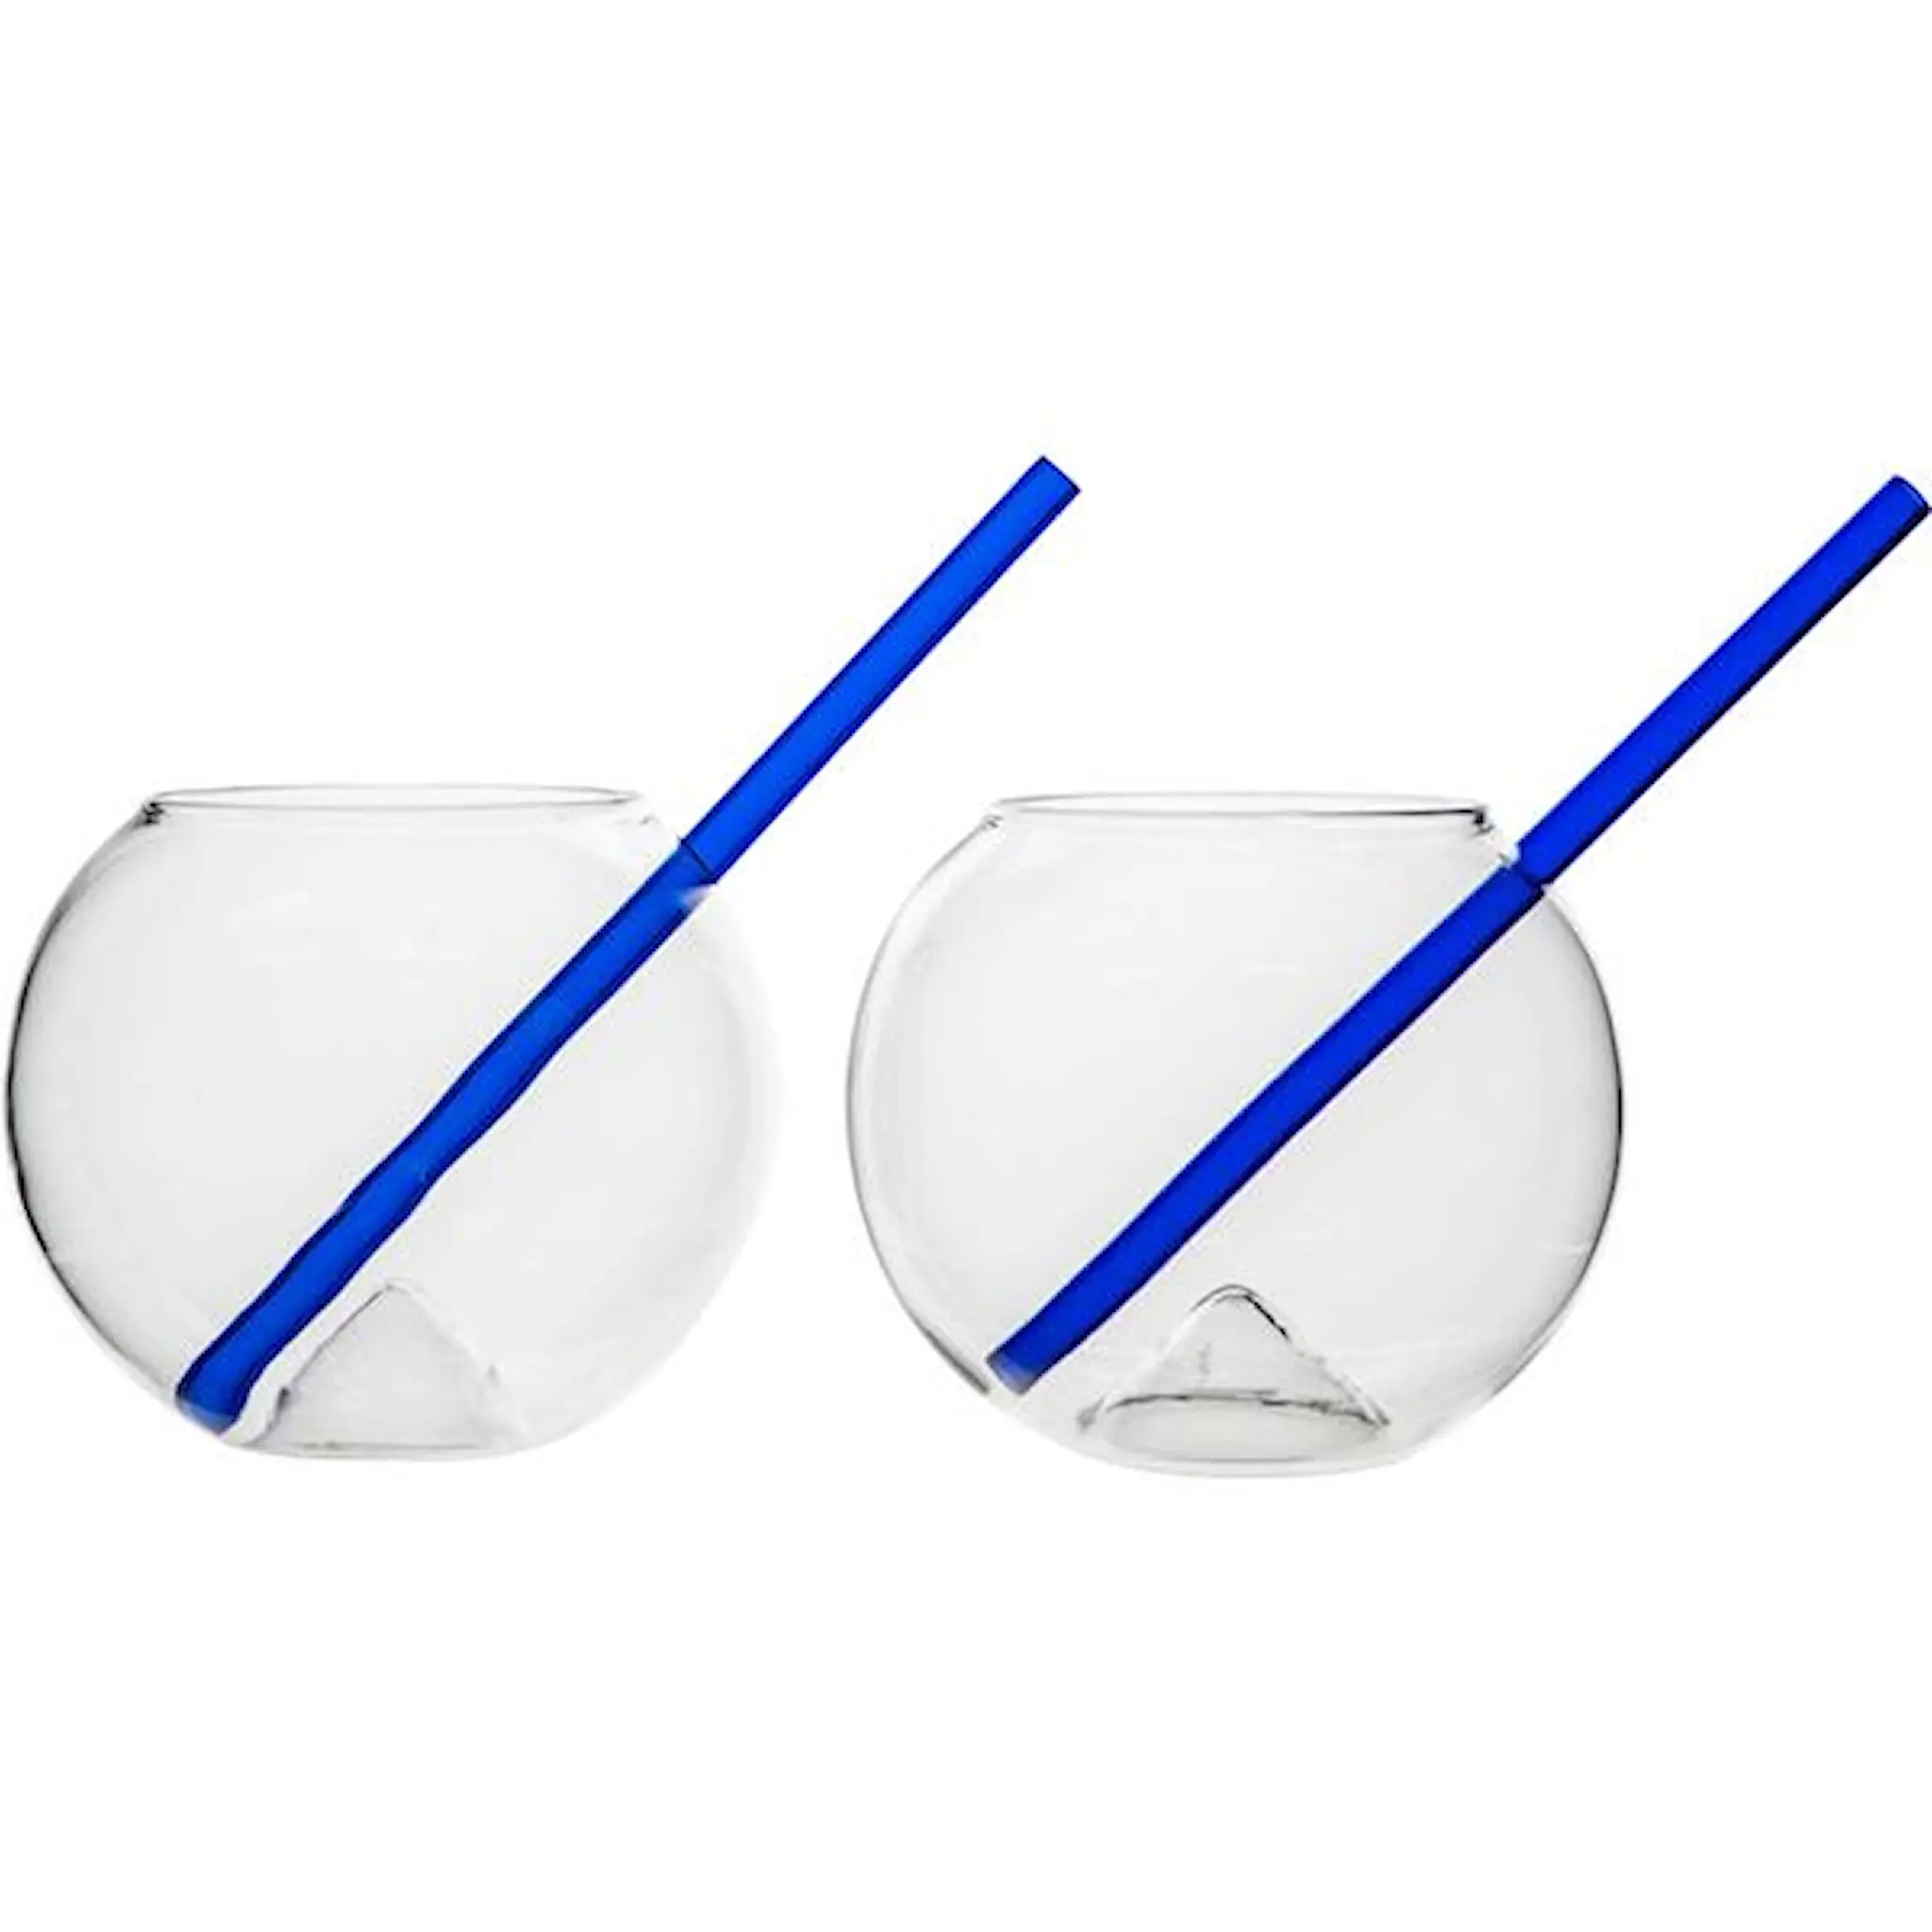 ByOn Magaluf glas med sugrör 2-pack klar/blå